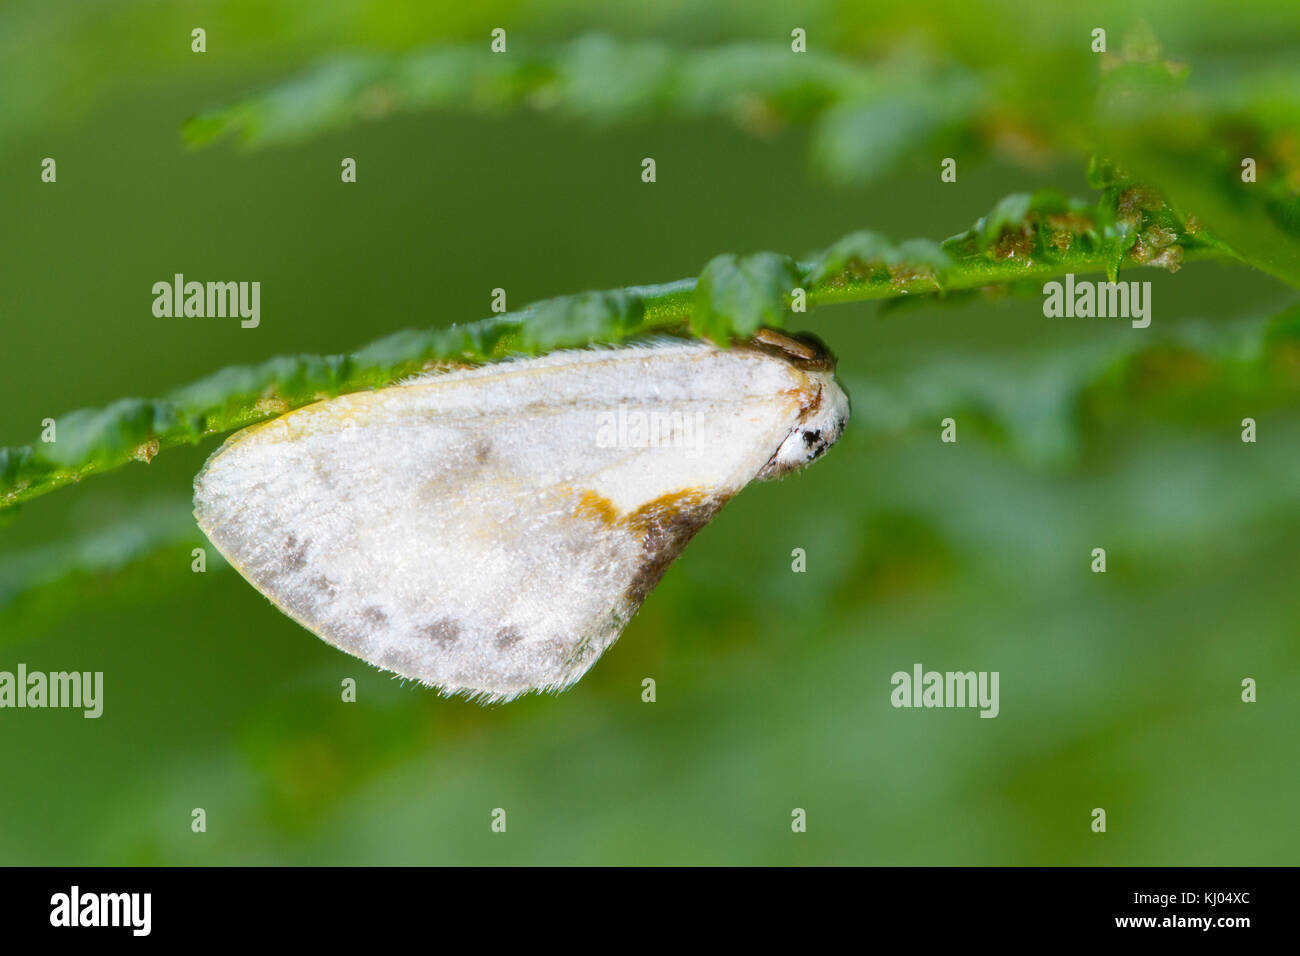 Caractère chinois (Cilix glaucata) papillon adulte reposant sous une fronde de fougère. Papillon est un oiseau à l'imiter. Powys, Pays de Galles. En août. Banque D'Images